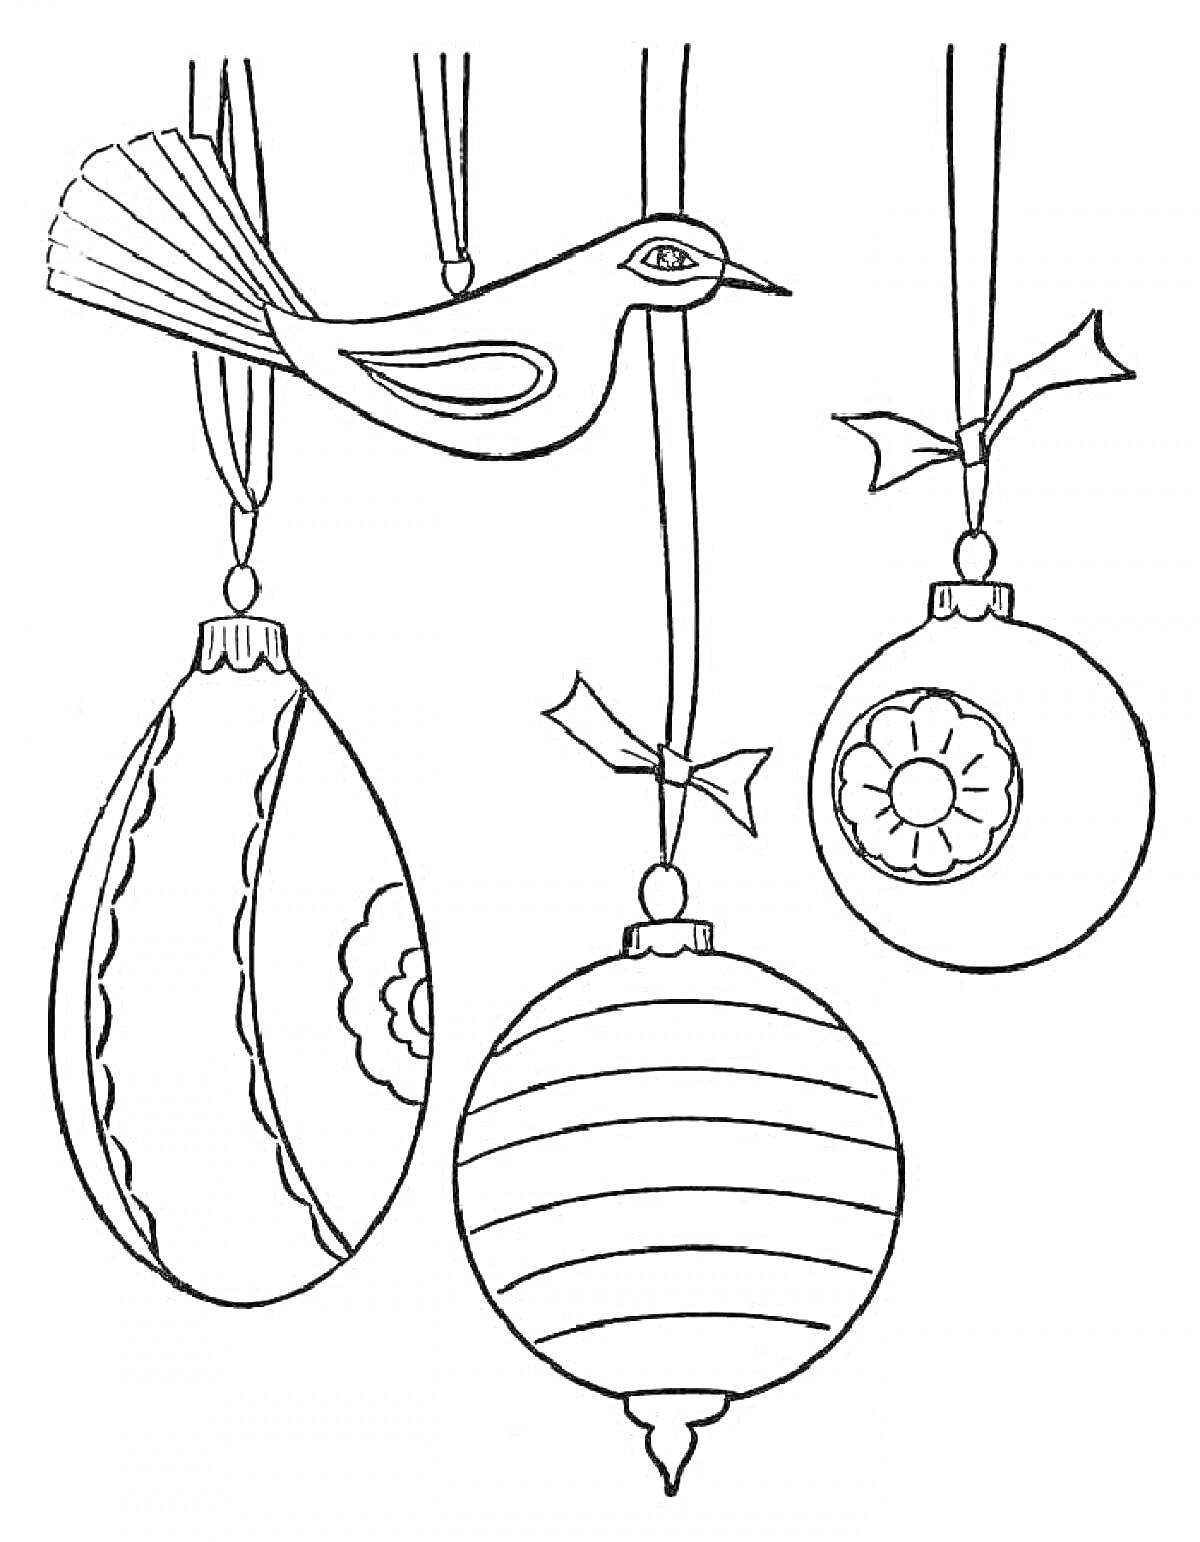 Раскраска Птица и три новогодние игрушки (каплевидная, круглая с цветочным узором, круглая с полосами)